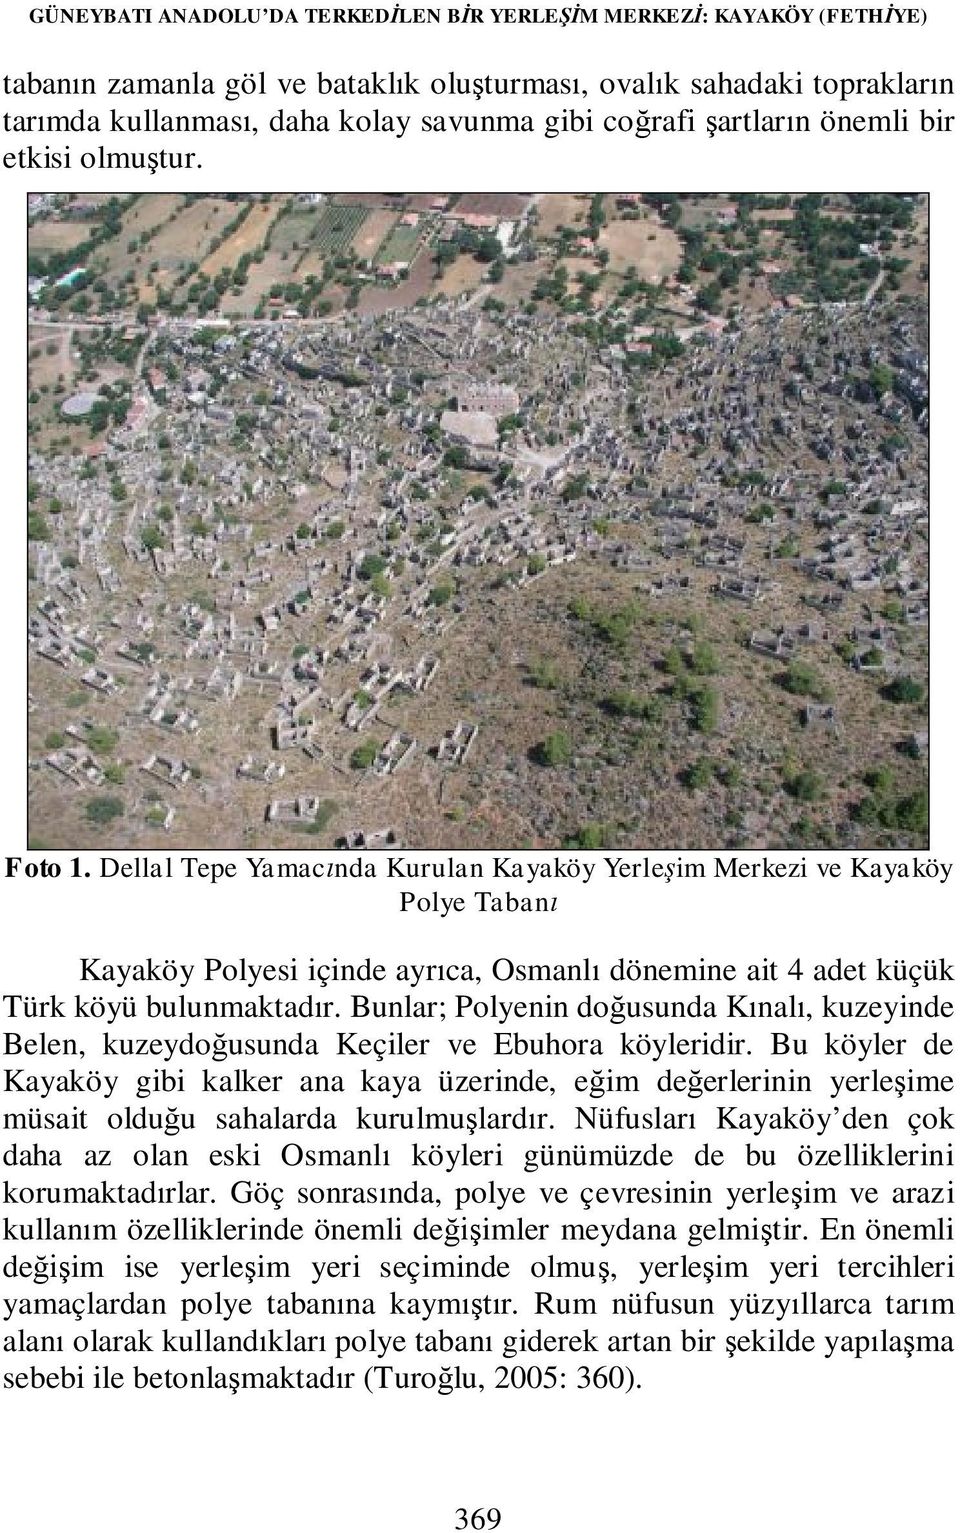 Dellal Tepe Yamacında Kurulan Kayaköy Yerleşim Merkezi ve Kayaköy Polye Tabanı Kayaköy Polyesi içinde ayrıca, Osmanlı dönemine ait 4 adet küçük Türk köyü bulunmaktadır.